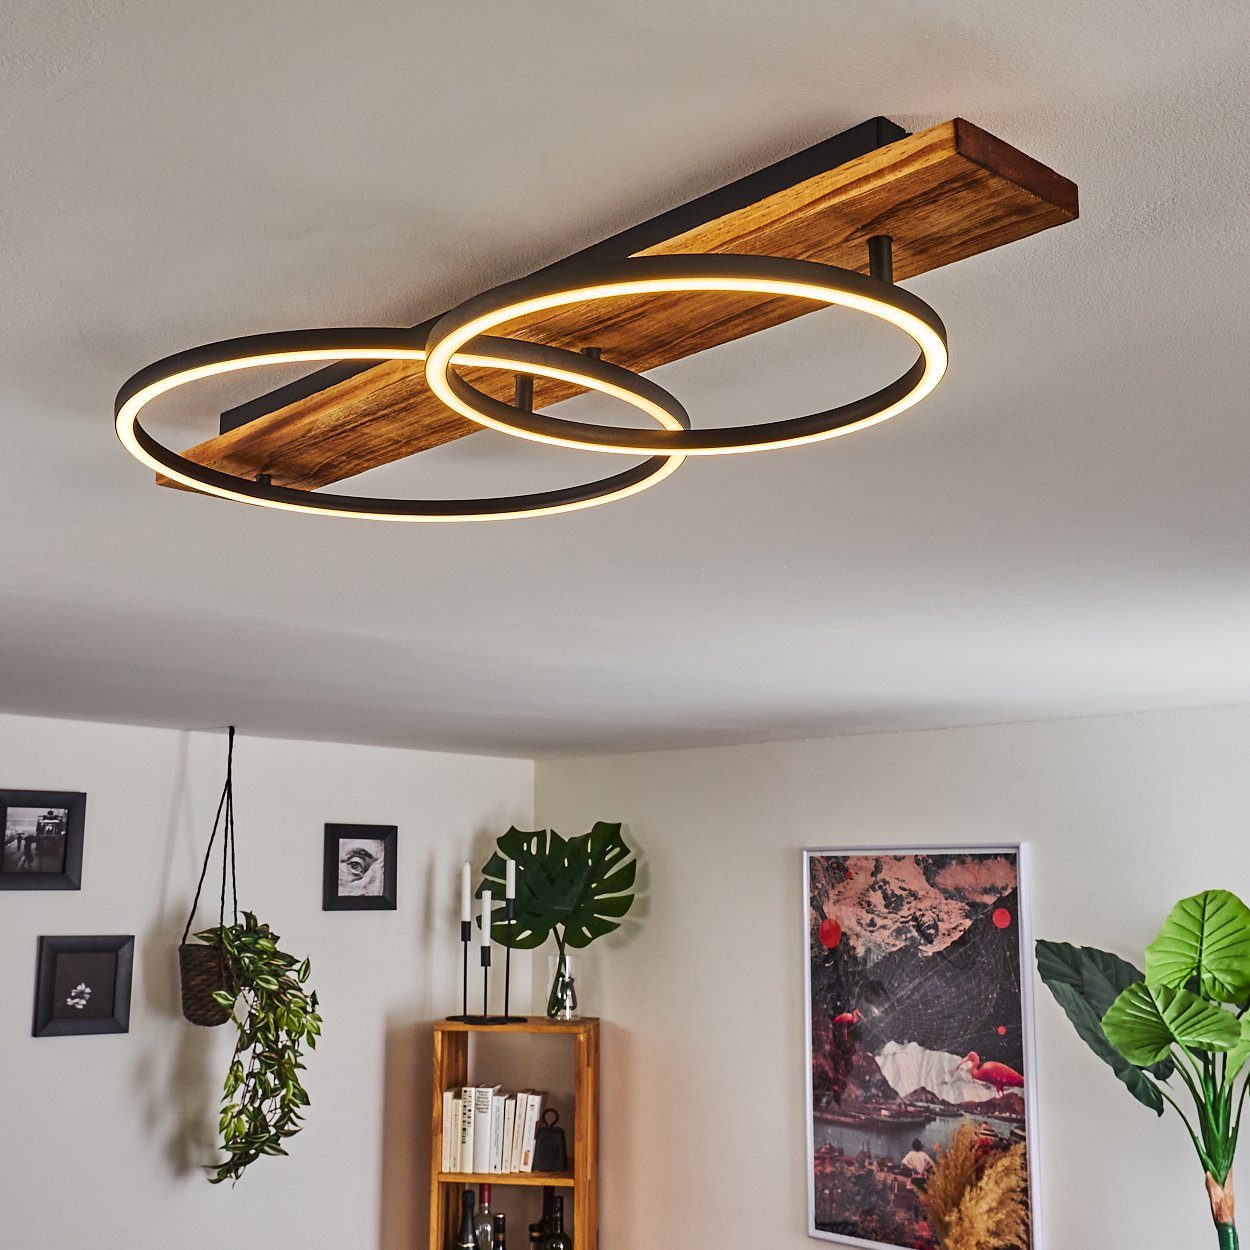 Luxus LED Decken Lampe Design Leuchte Beleuchtung Wohn Schlaf Zimmer Flur Küche 